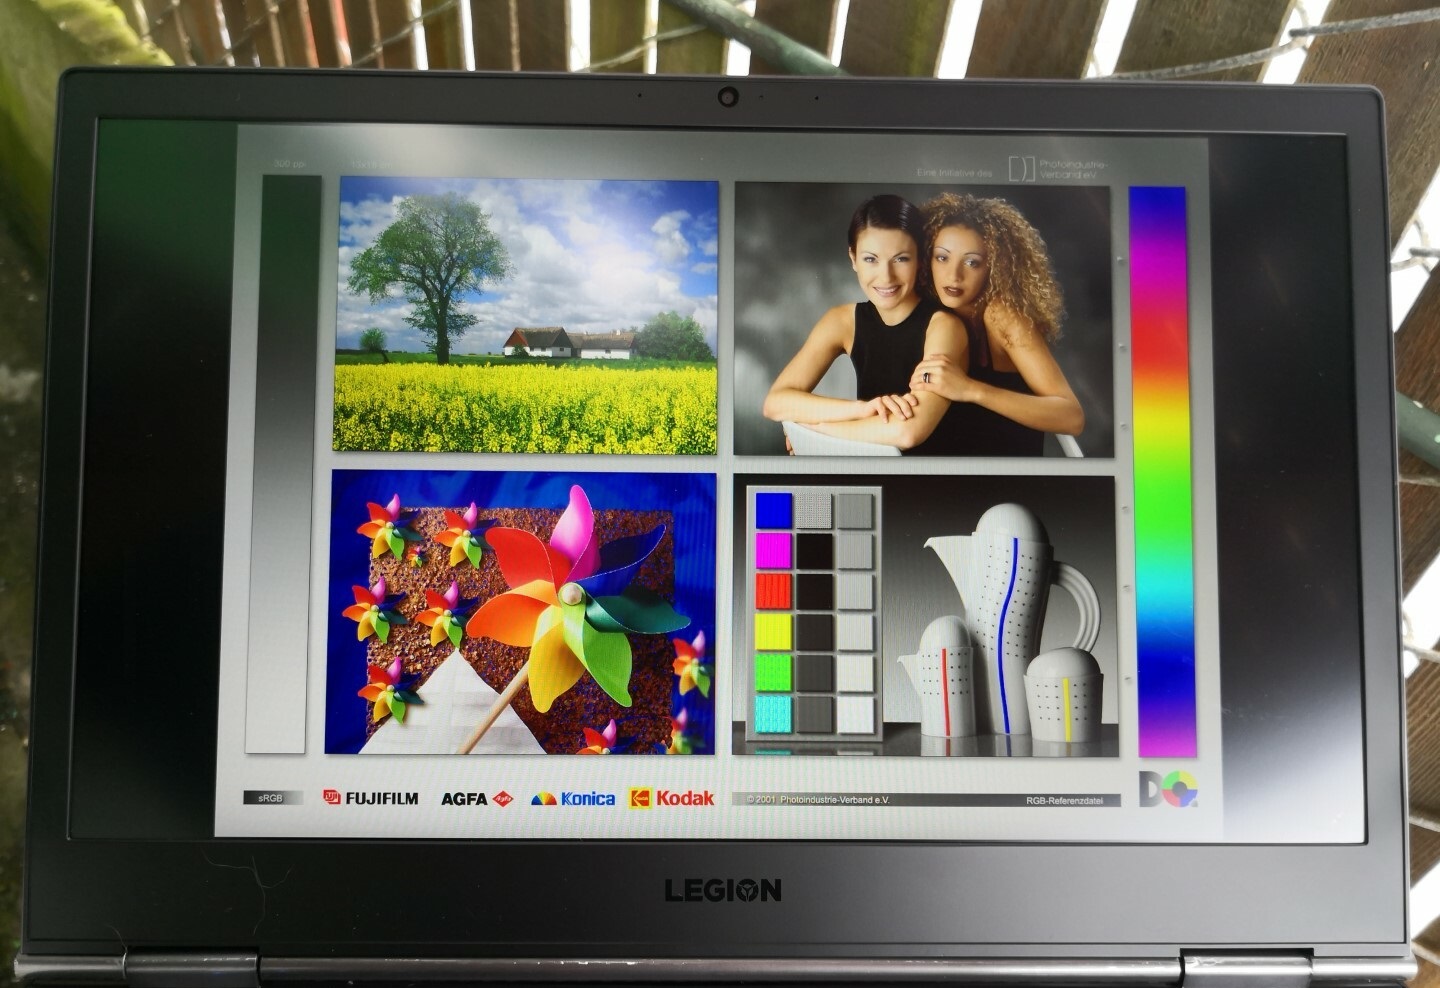 Đánh giá Lenovo Legion Y740-17ICH: Laptop chơi game RTX 2080 giá rẻ nhất !, trang web tư vấn về máy tính xách tay